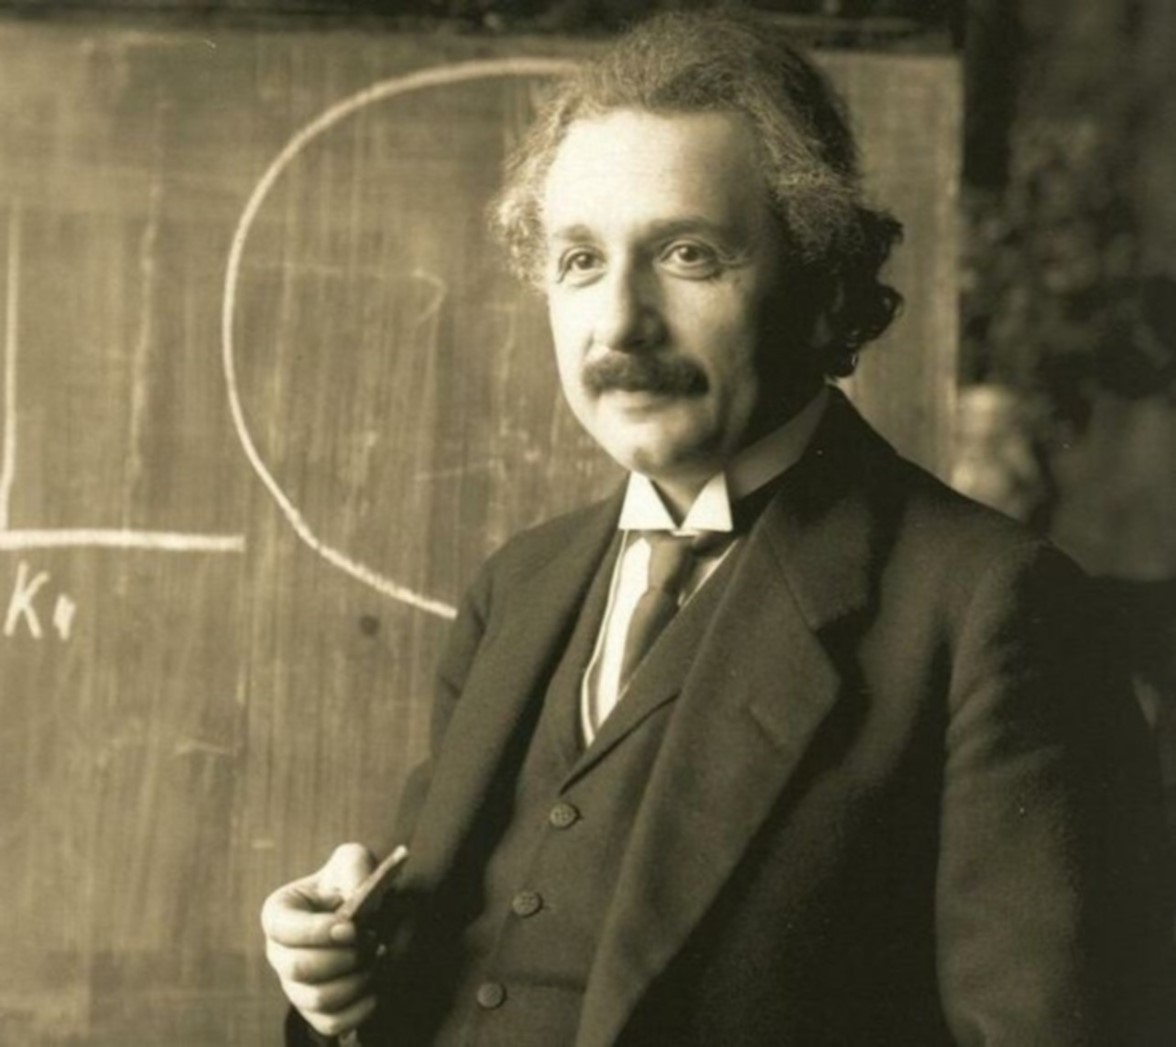 Fotografía de Albert Einstein